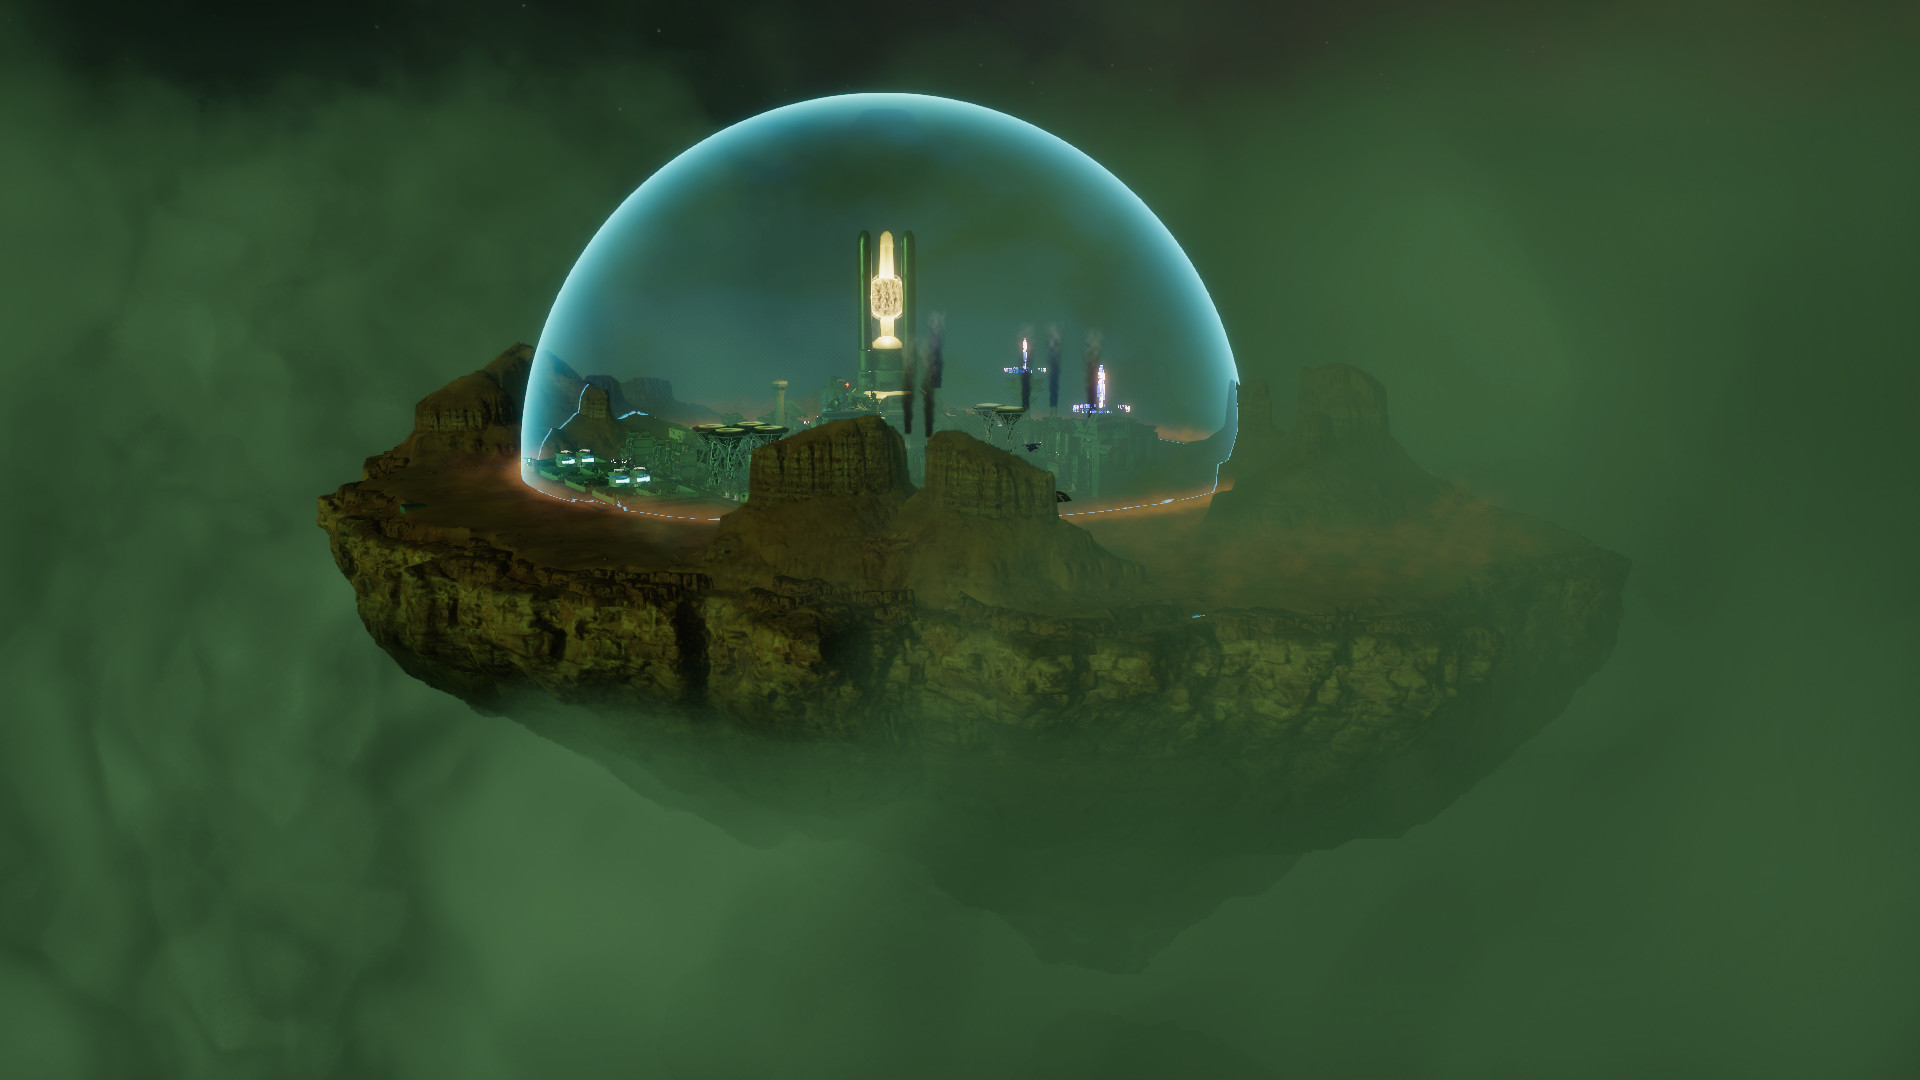 Sphere je sci-fi staviteľ mesta zasadený do plávajúcej bubliny